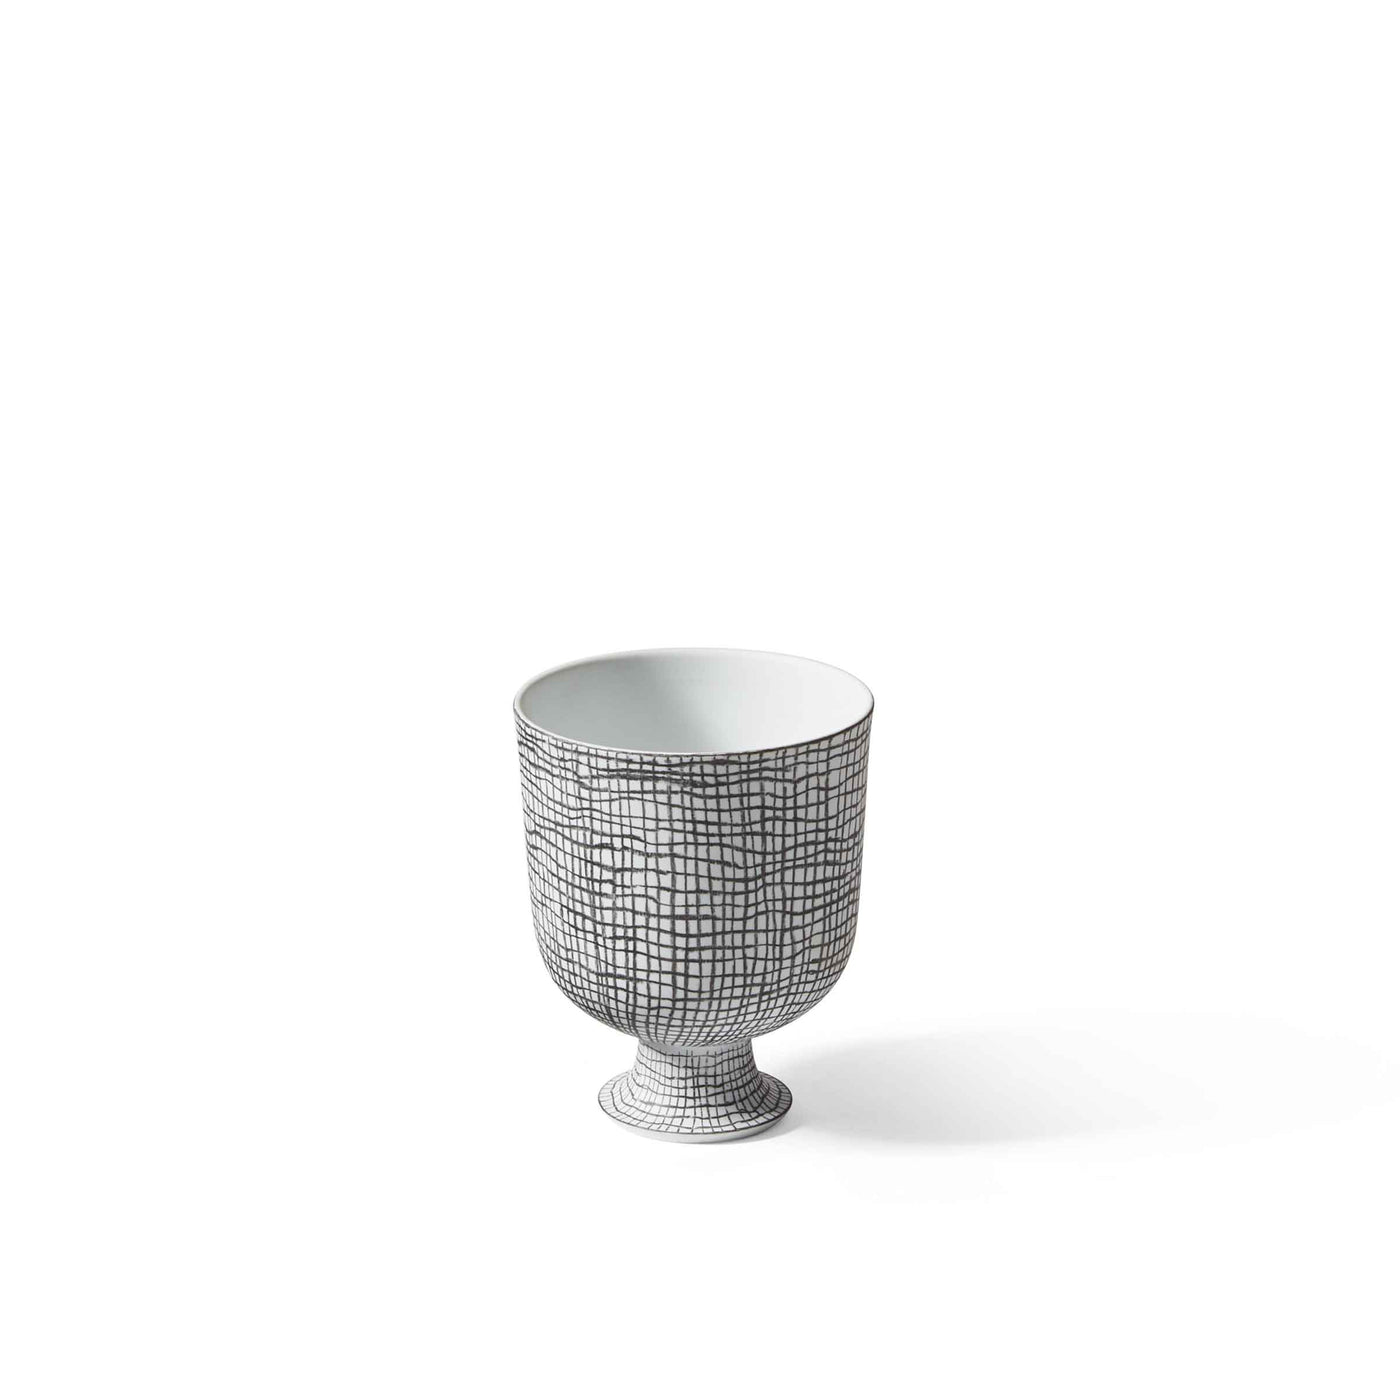 Porcelain Cachepot Vase POST SCRIPTUM, designed by Formafantasma for Cassina 01